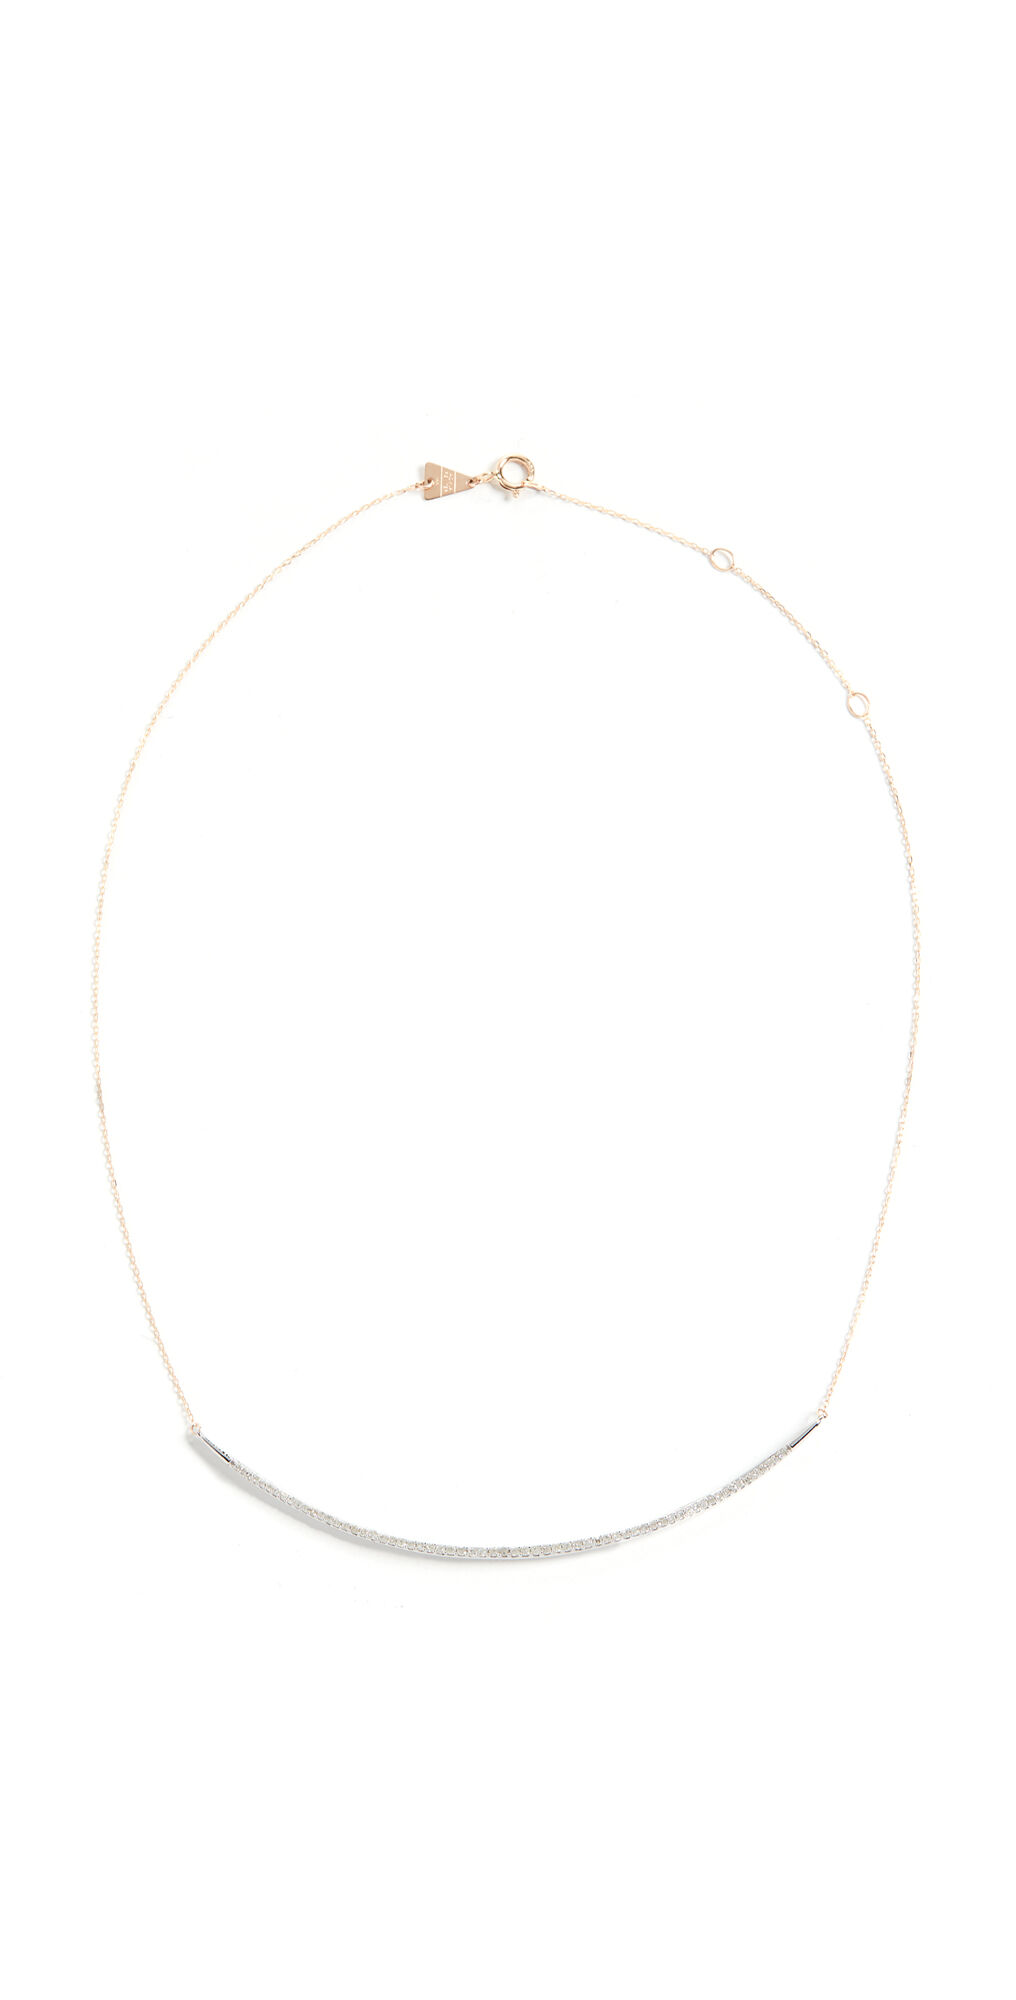 Adina Reyter 14k Gold Pave Curve Collar Necklace Mixed Metals One Size  Mixed Metals  size:One Size